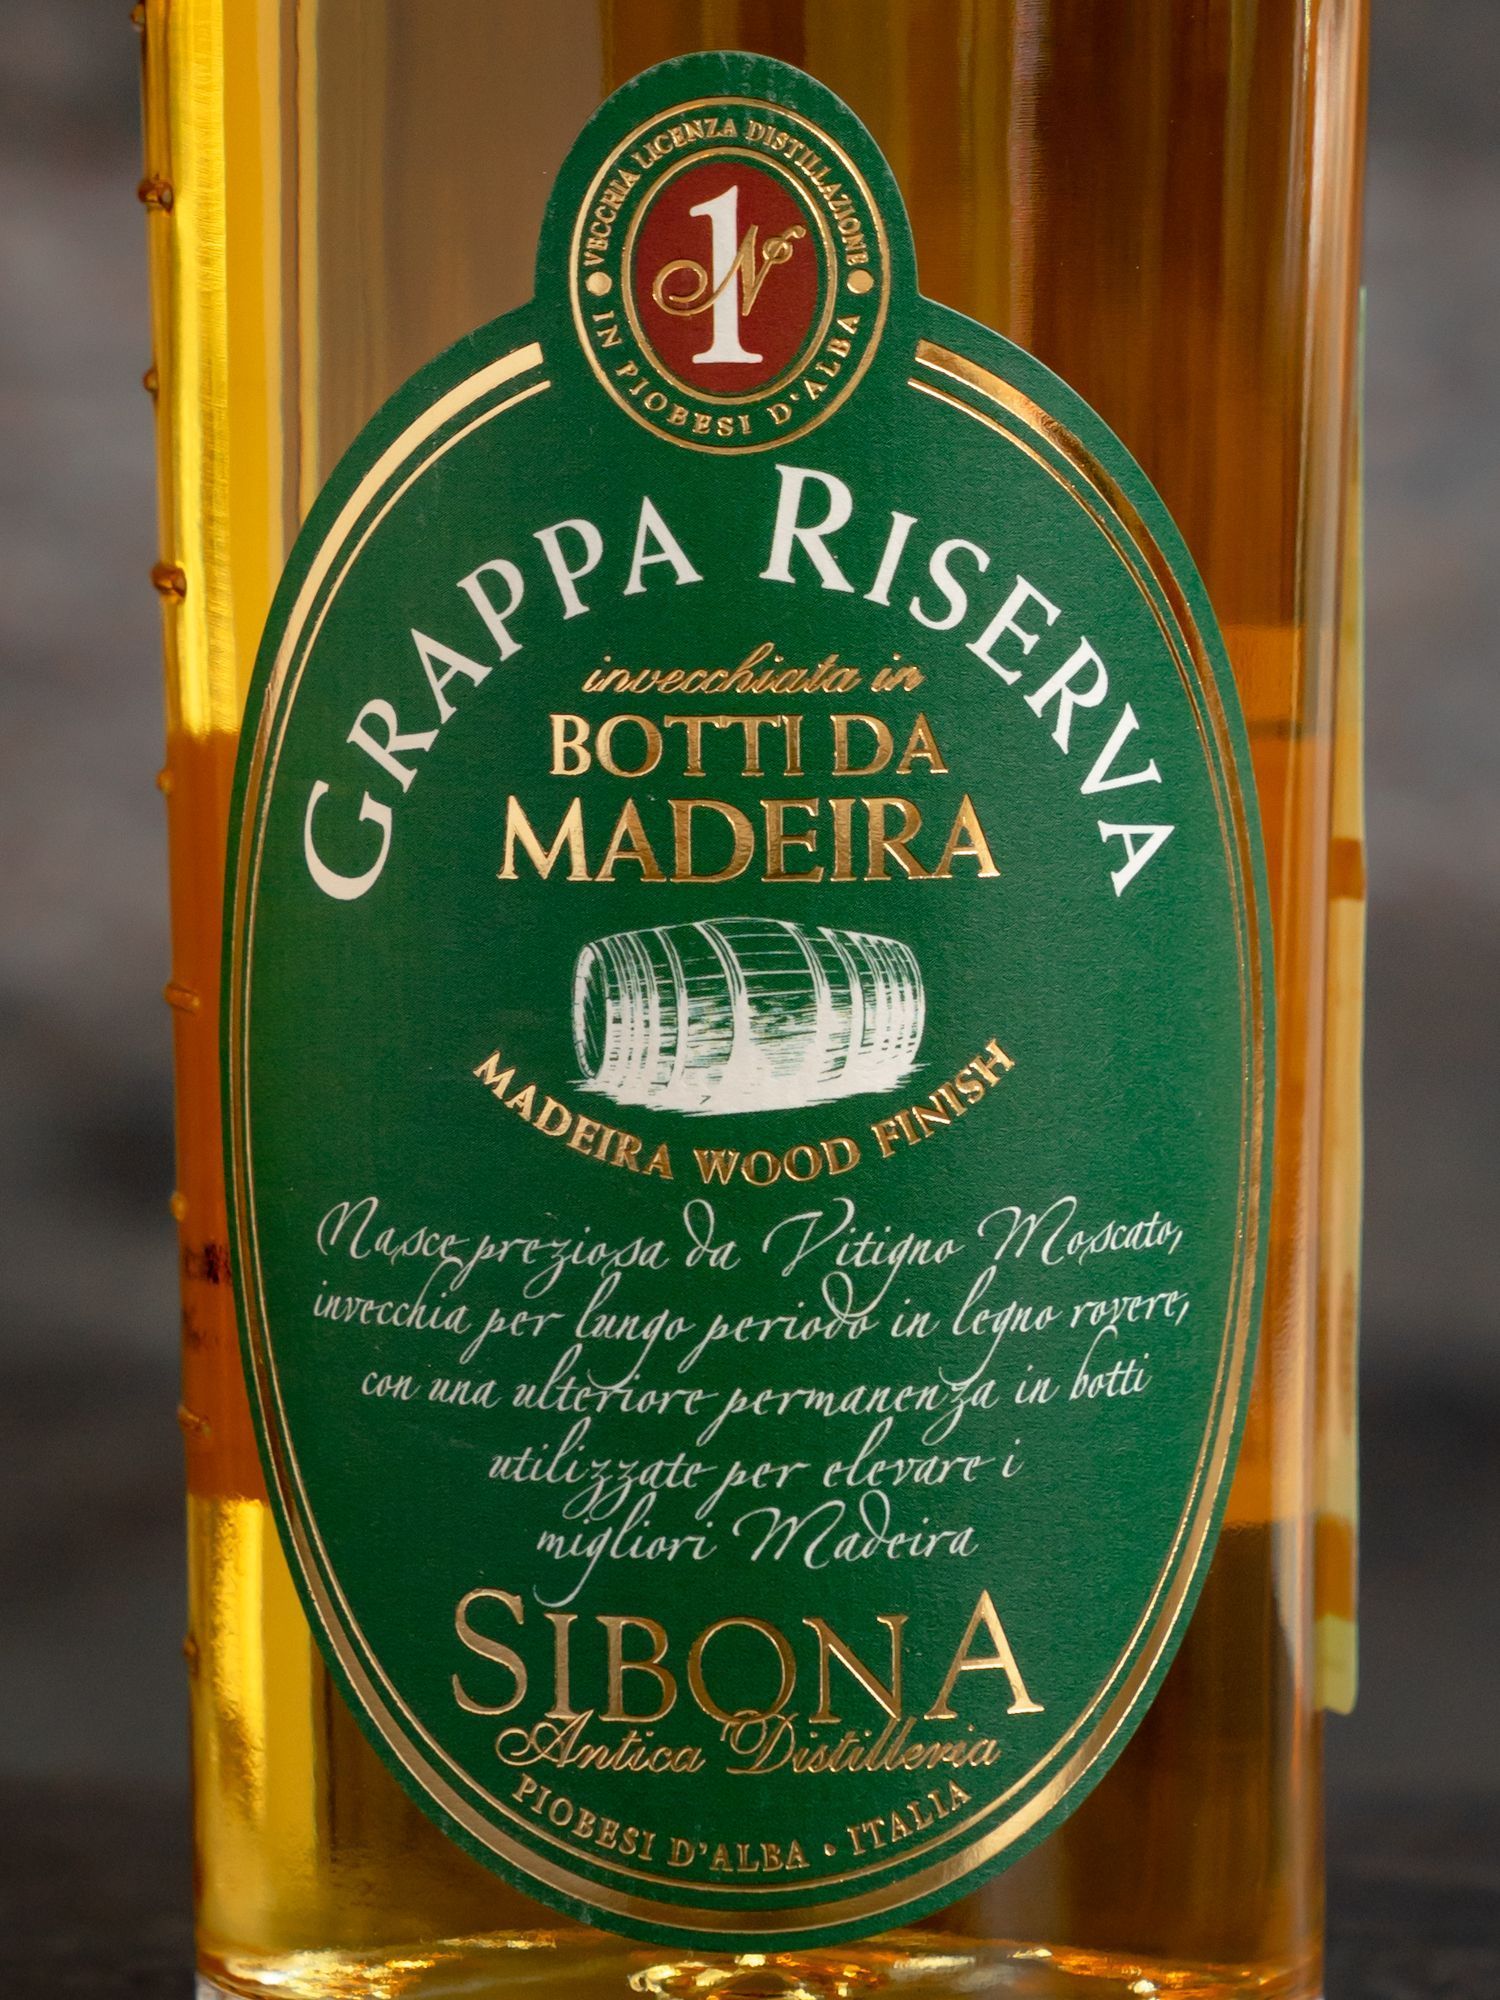 Граппа Sibona Grappa Riserva Madeira Wood Finish / Сибона Ризерва Мадейра Вуд Финиш